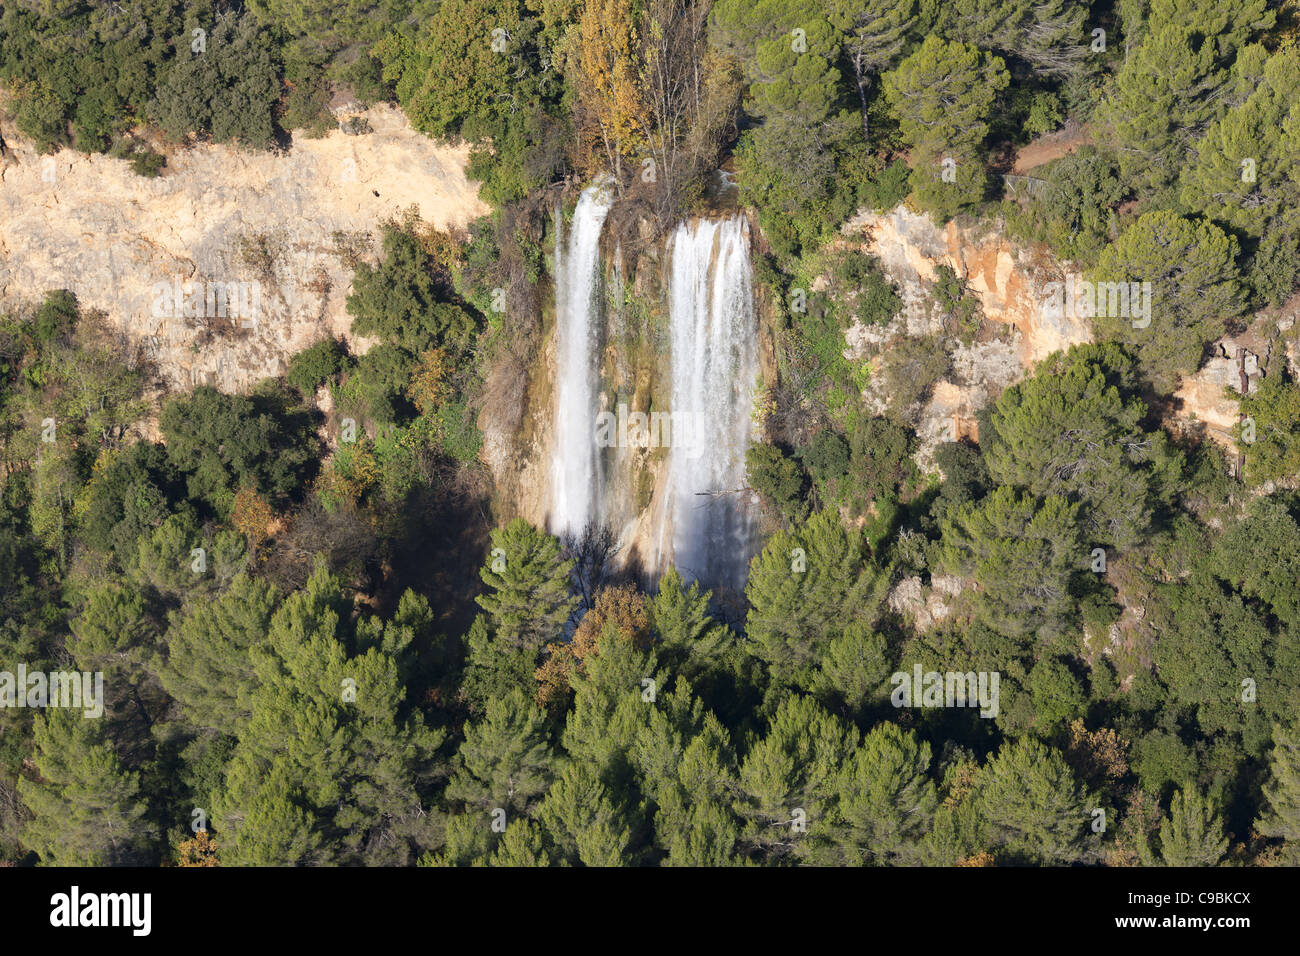 LUFTAUFNAHME. 40 Meter hoher Wasserfall Sillans in einer bewaldeten Umgebung. Var, das Hinterland der französischen Riviera, Frankreich. Stockfoto